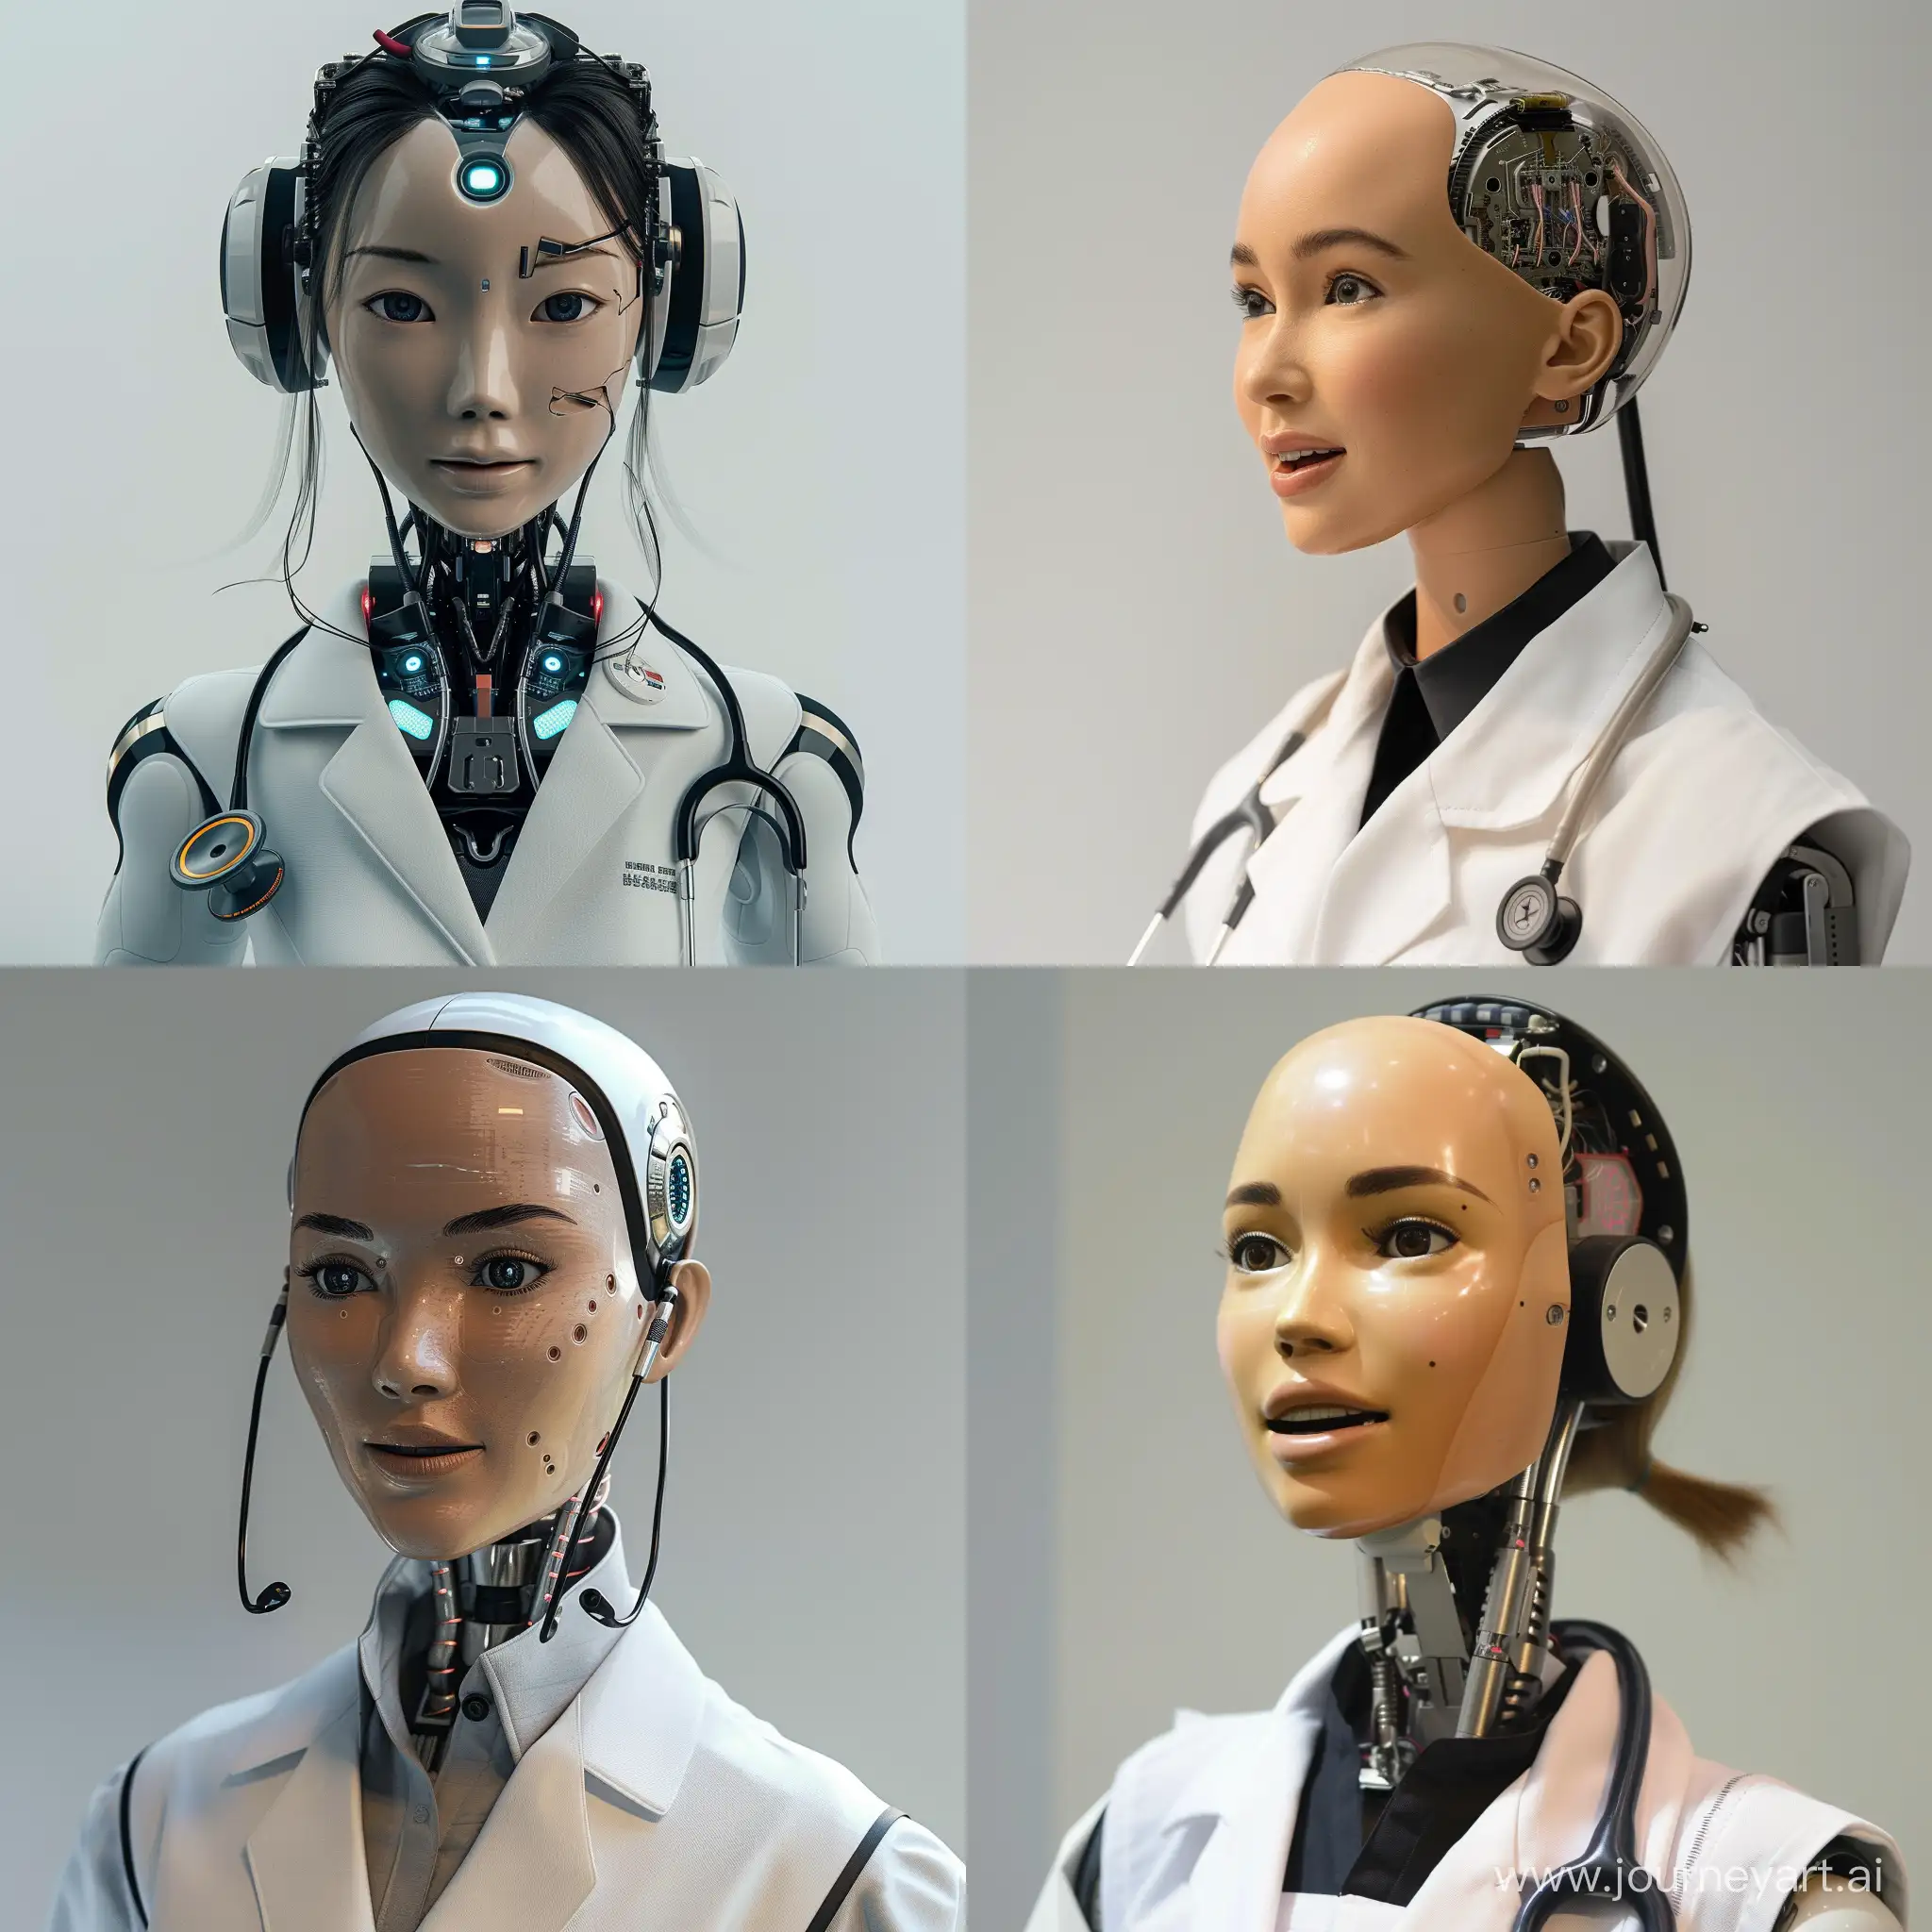 Futuristic-Female-Robot-Doctor-Speaking-in-Elegant-Attire